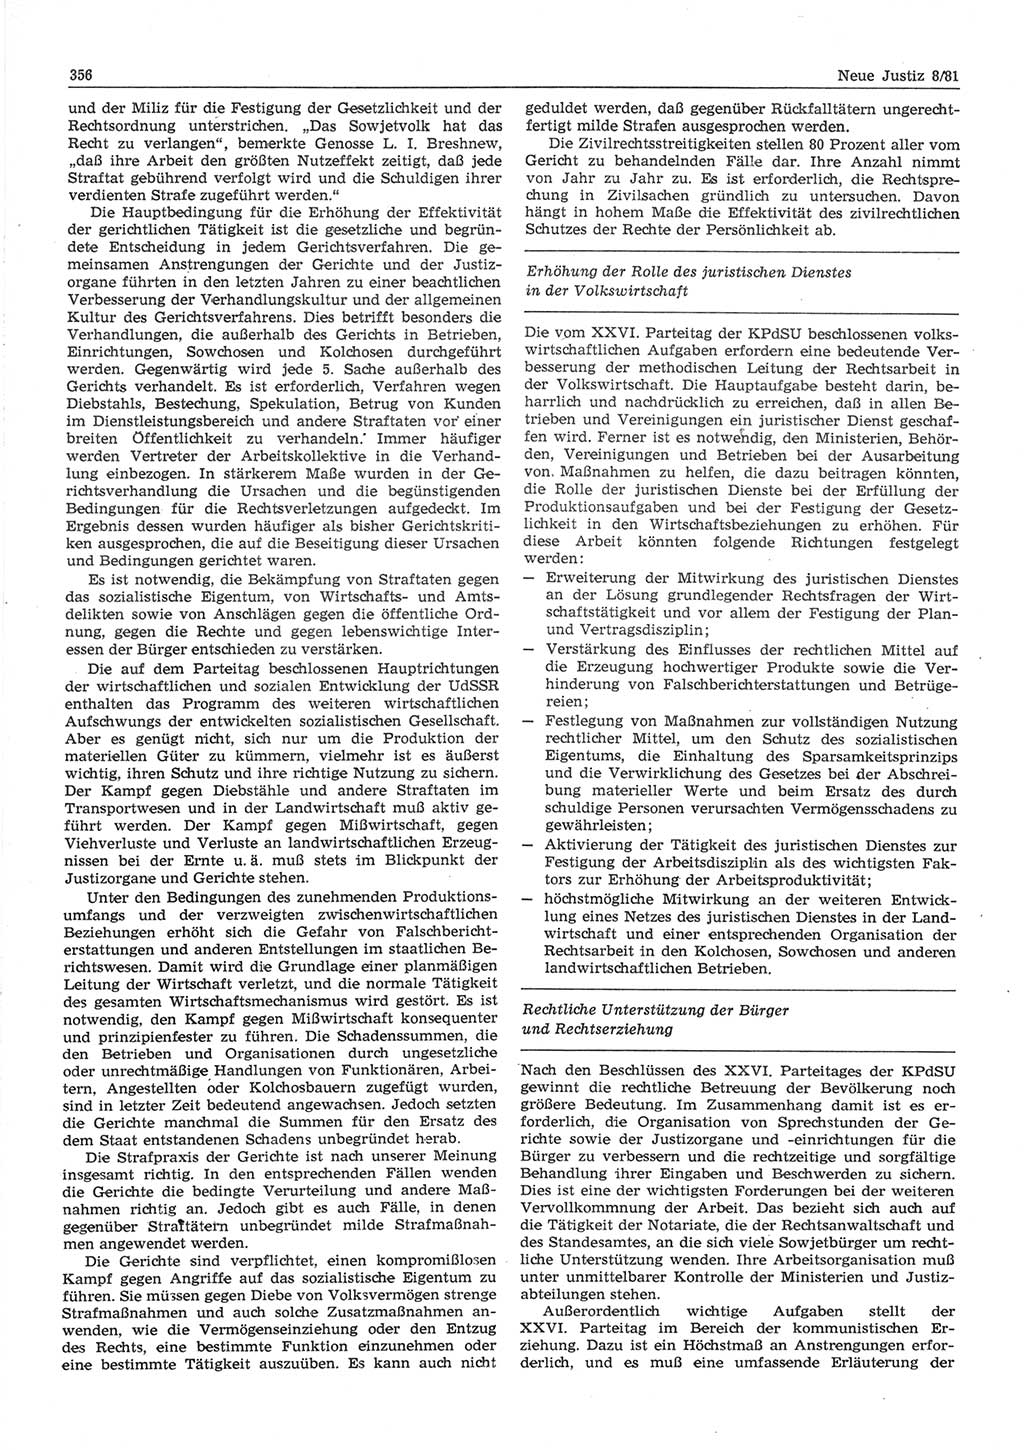 Neue Justiz (NJ), Zeitschrift für sozialistisches Recht und Gesetzlichkeit [Deutsche Demokratische Republik (DDR)], 35. Jahrgang 1981, Seite 356 (NJ DDR 1981, S. 356)